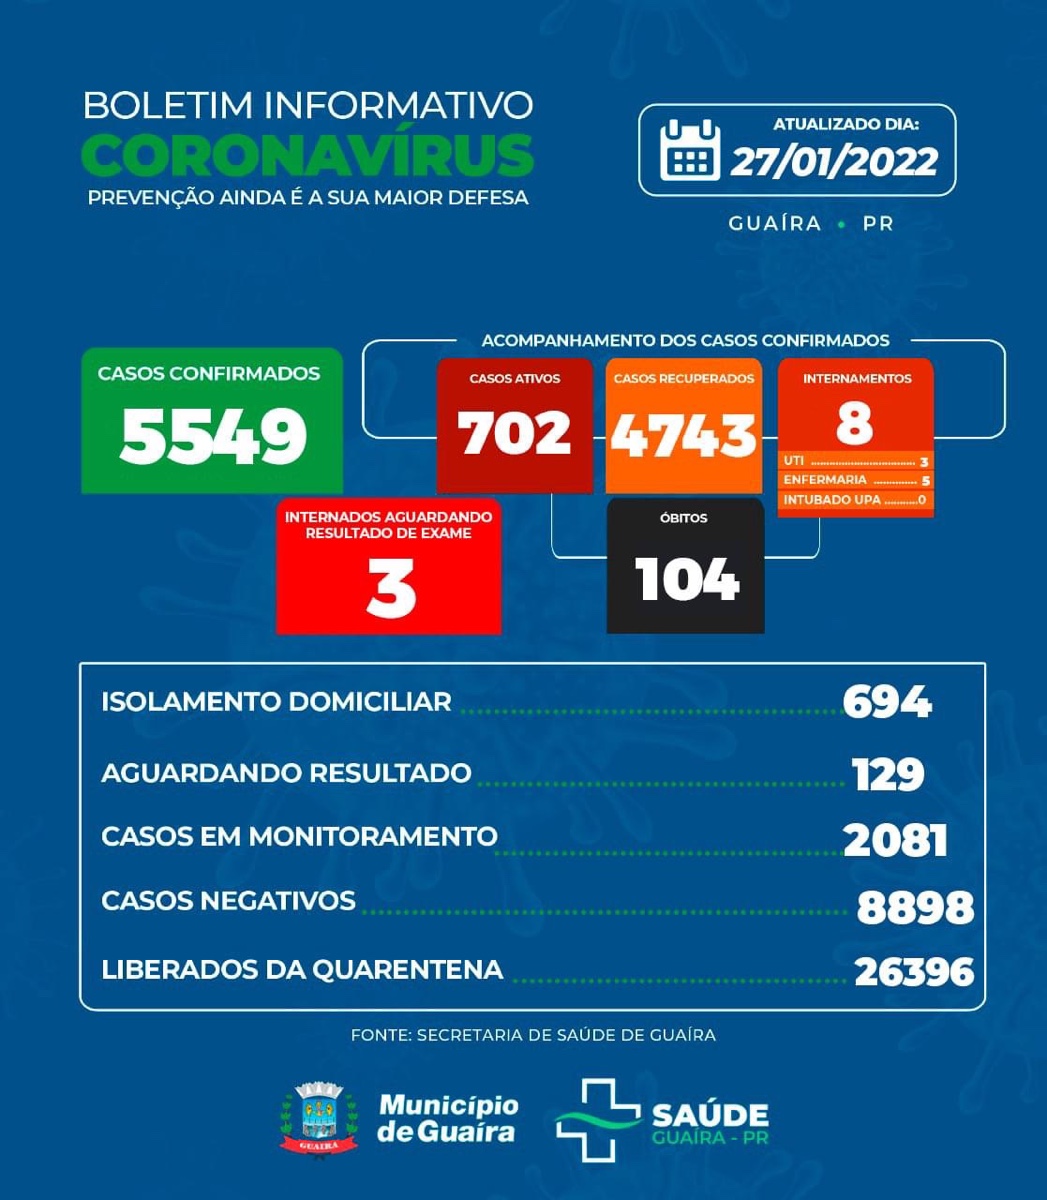 Guaíra - Covid-19: saúde informa 702 casos ativos e 129 aguardando resultado • Portal Guaíra